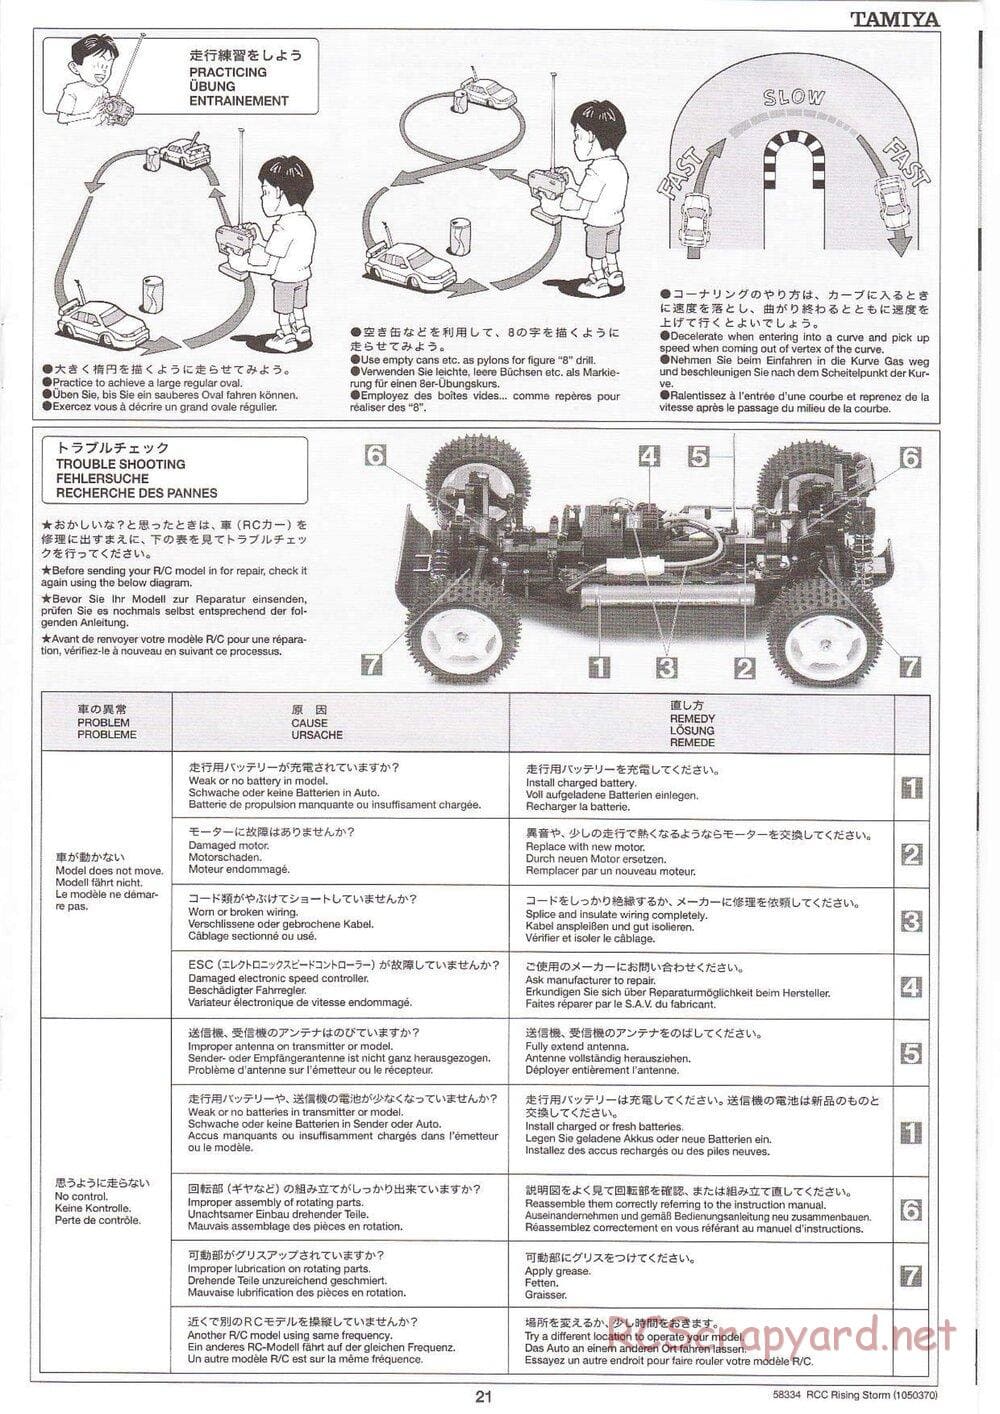 Tamiya - Rising Storm Chassis - Manual - Page 21